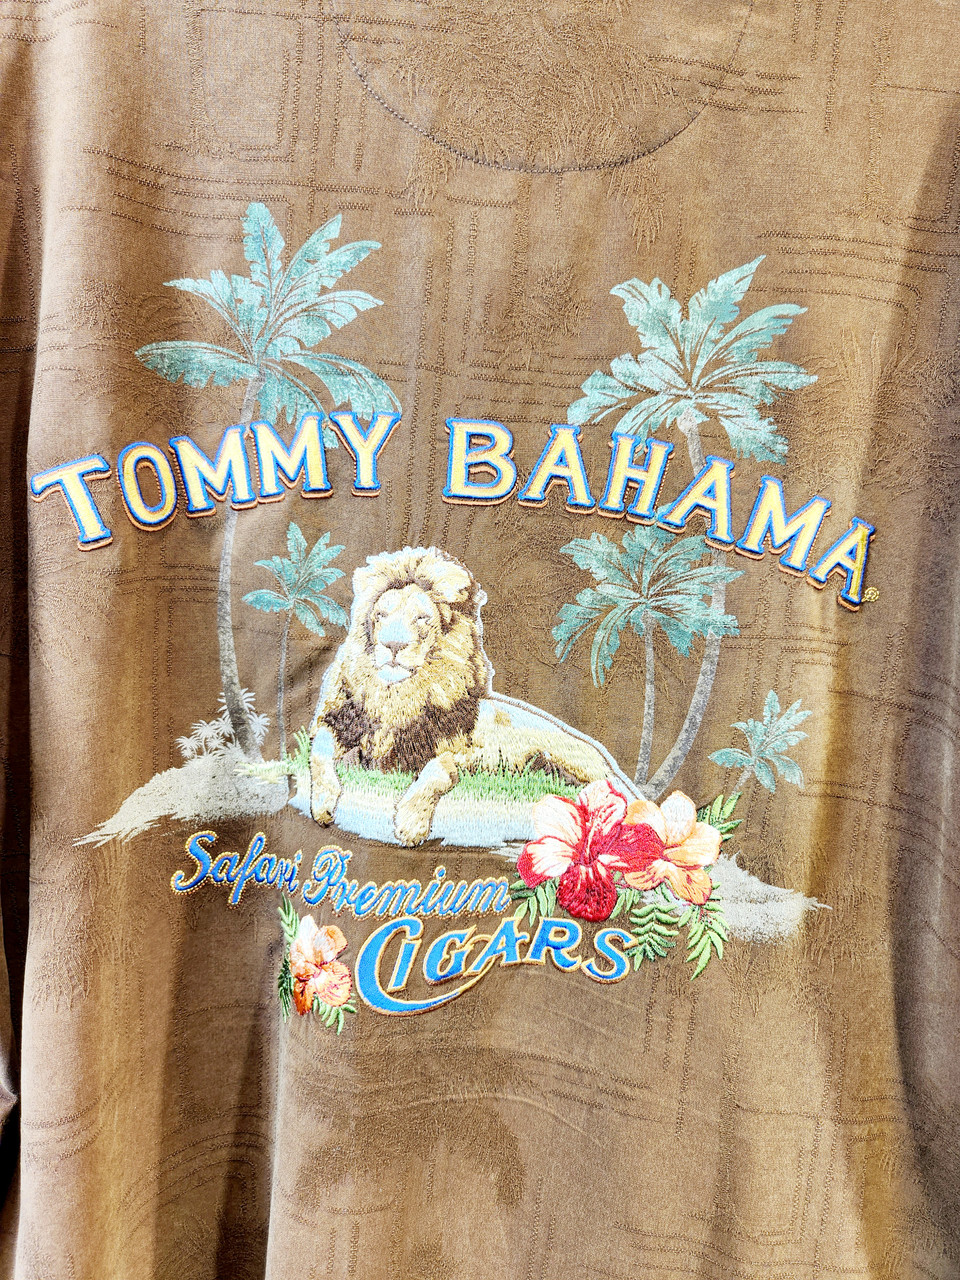 TOMMY BAHAMA 100% Silk Safari Premium Cigars Button-down Shirt, Size M